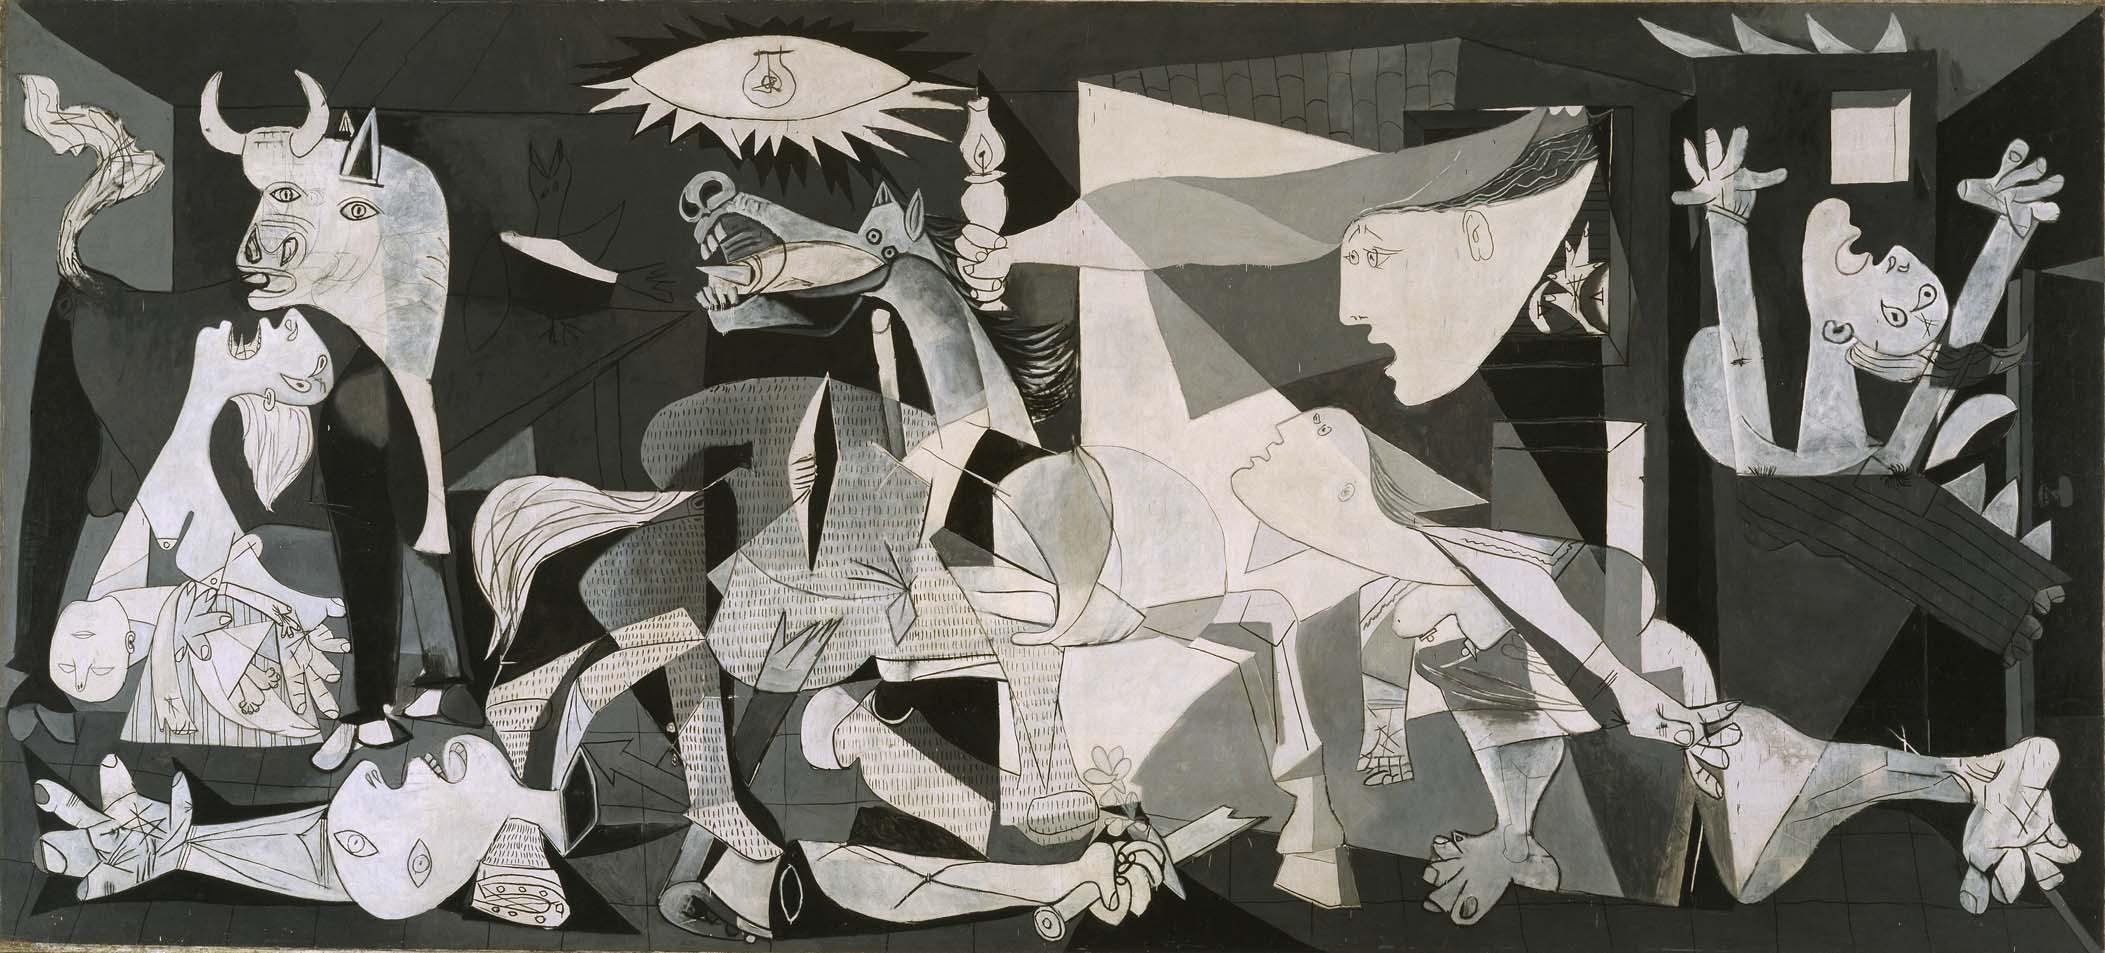 格尔尼卡 by 巴勃罗 毕加索 - 1937 - 349 cm × 776 cm 